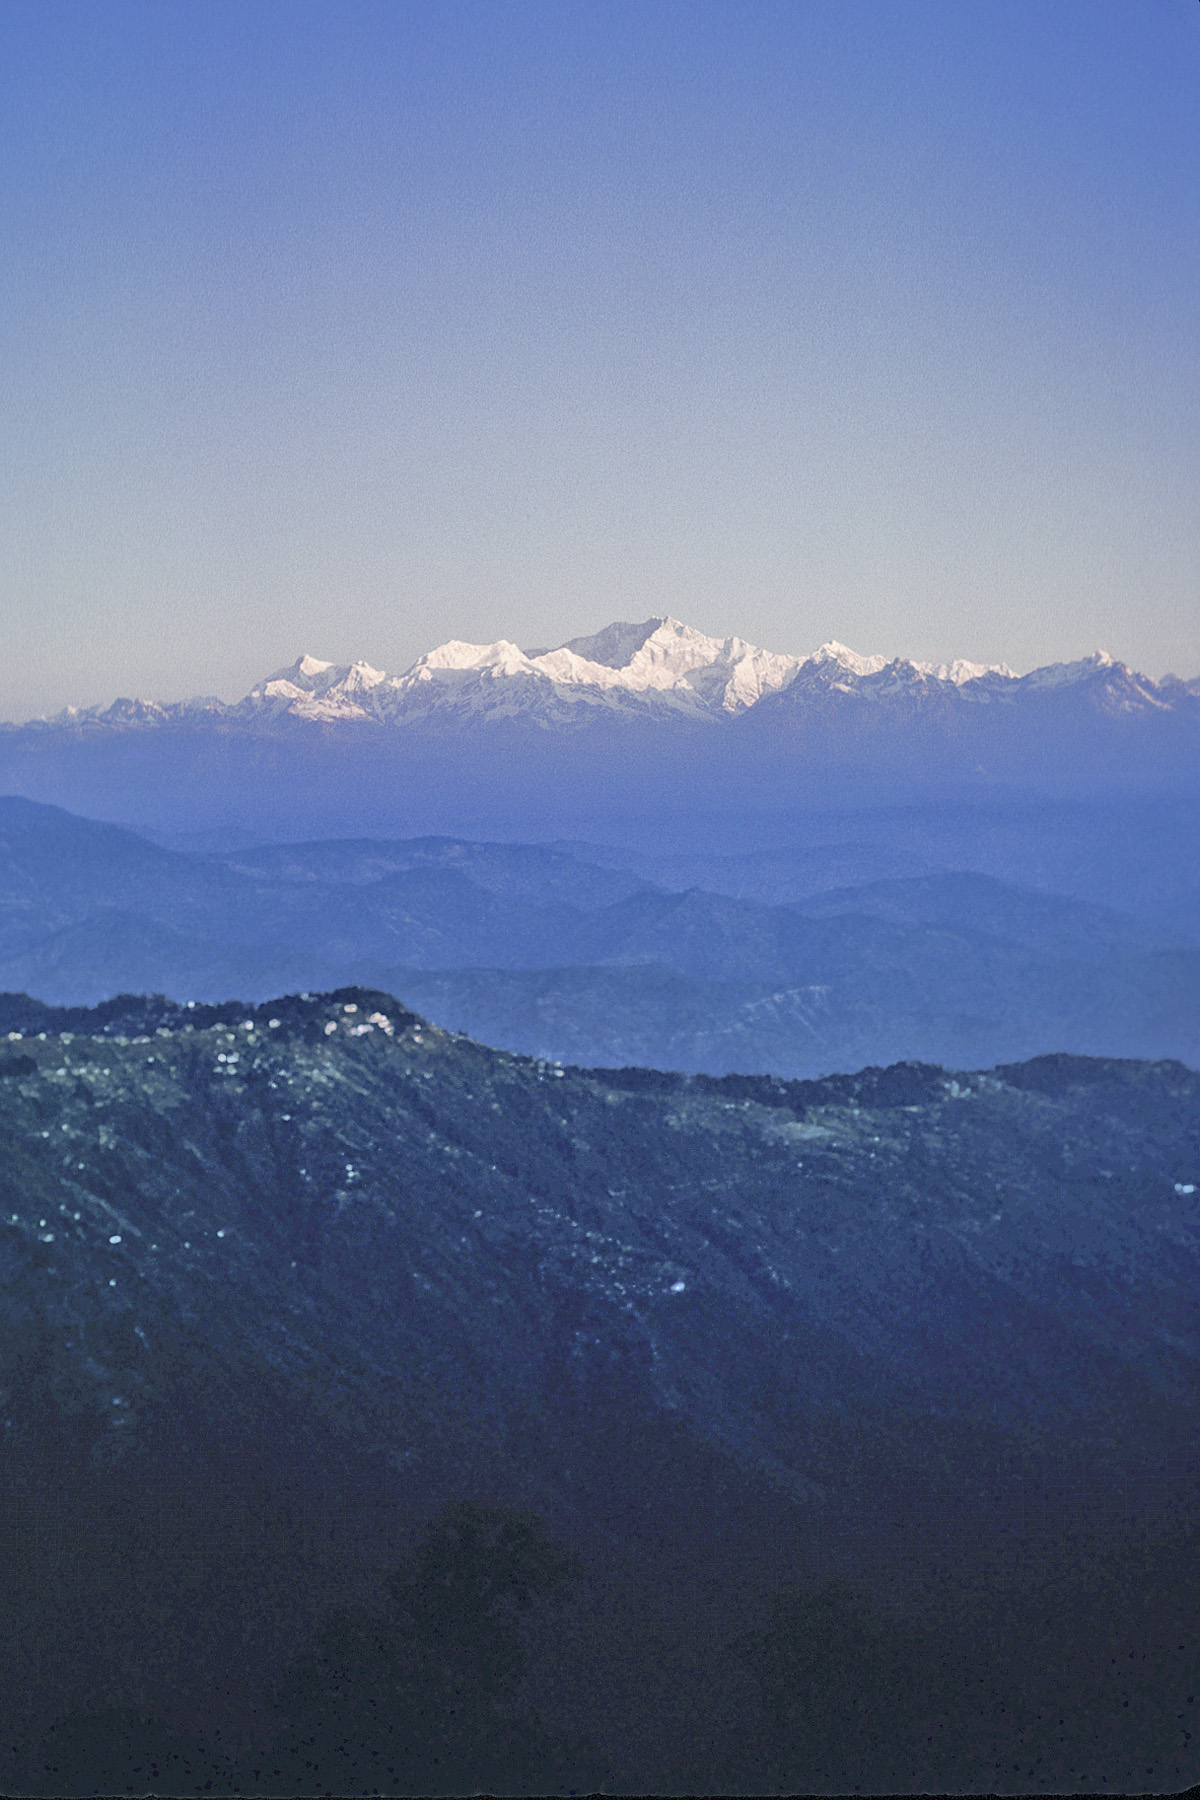 Near Darjeeling